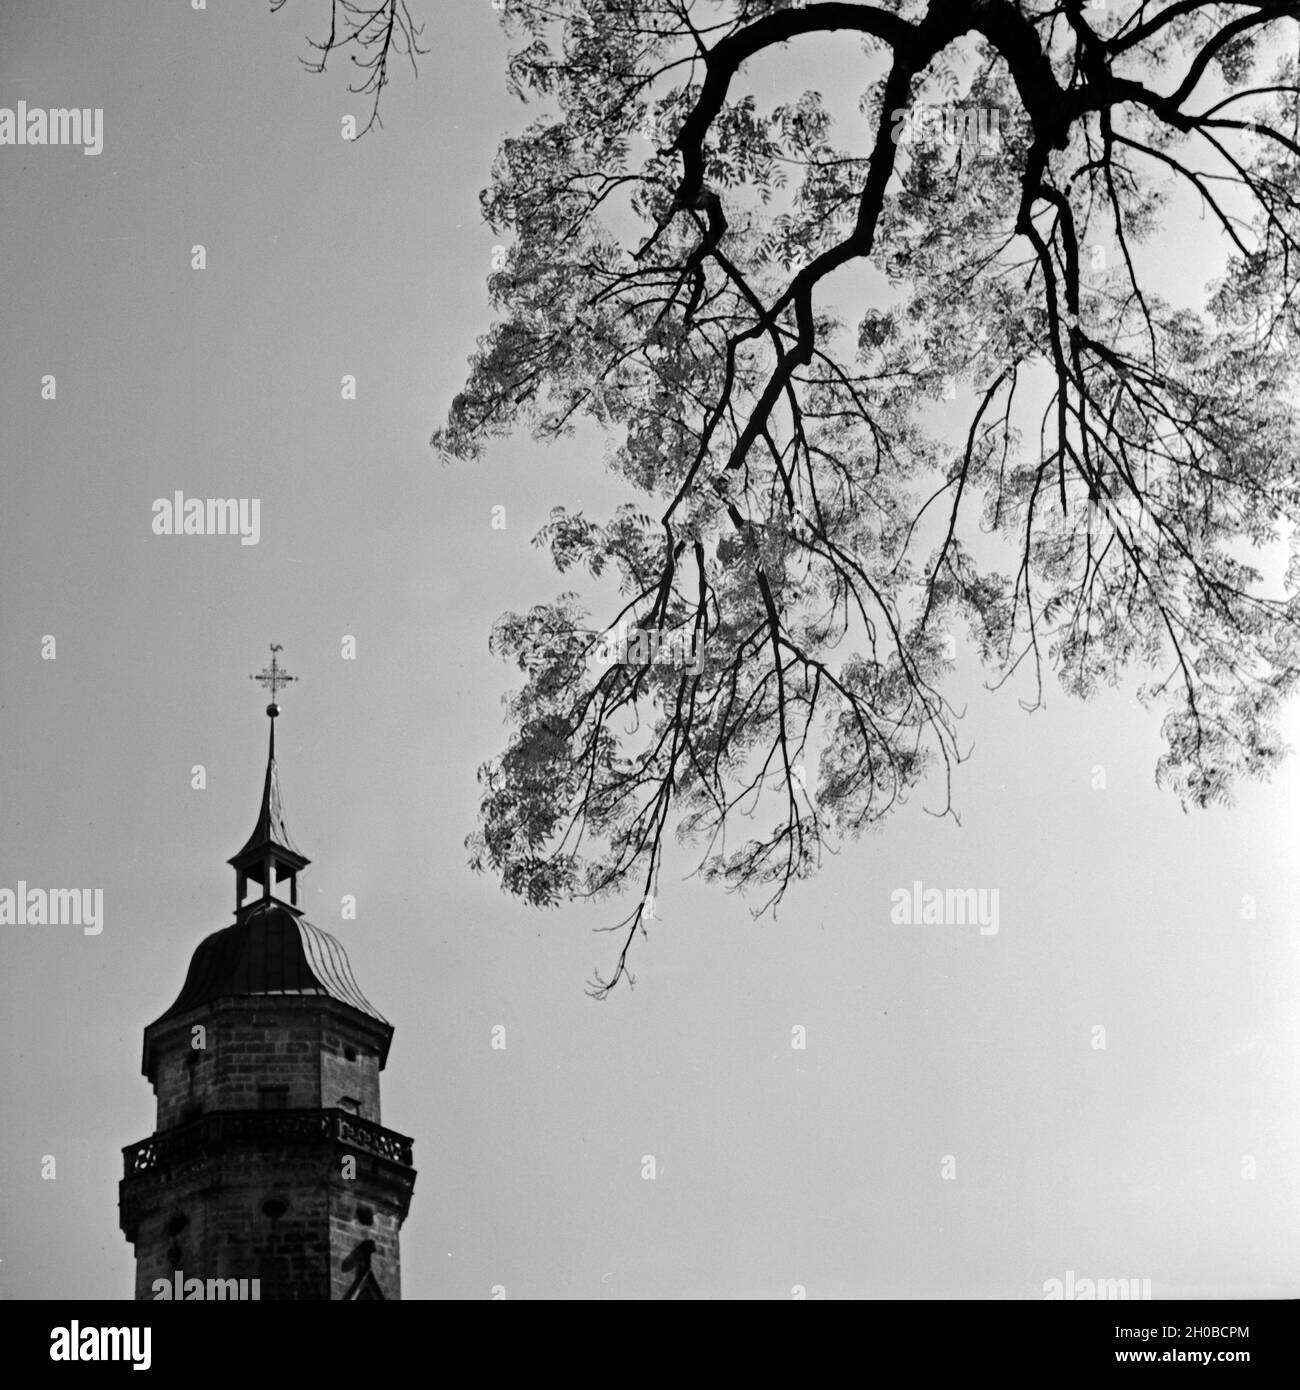 Spitzes des Turms der Stadtkirche in Freudenstadt im Schwarzwald, Deutschland 1930er Jahre. Top of the belfry of Stadtkirche church at Freudenstadt in Black Forest, Germany 1930s. Stock Photo